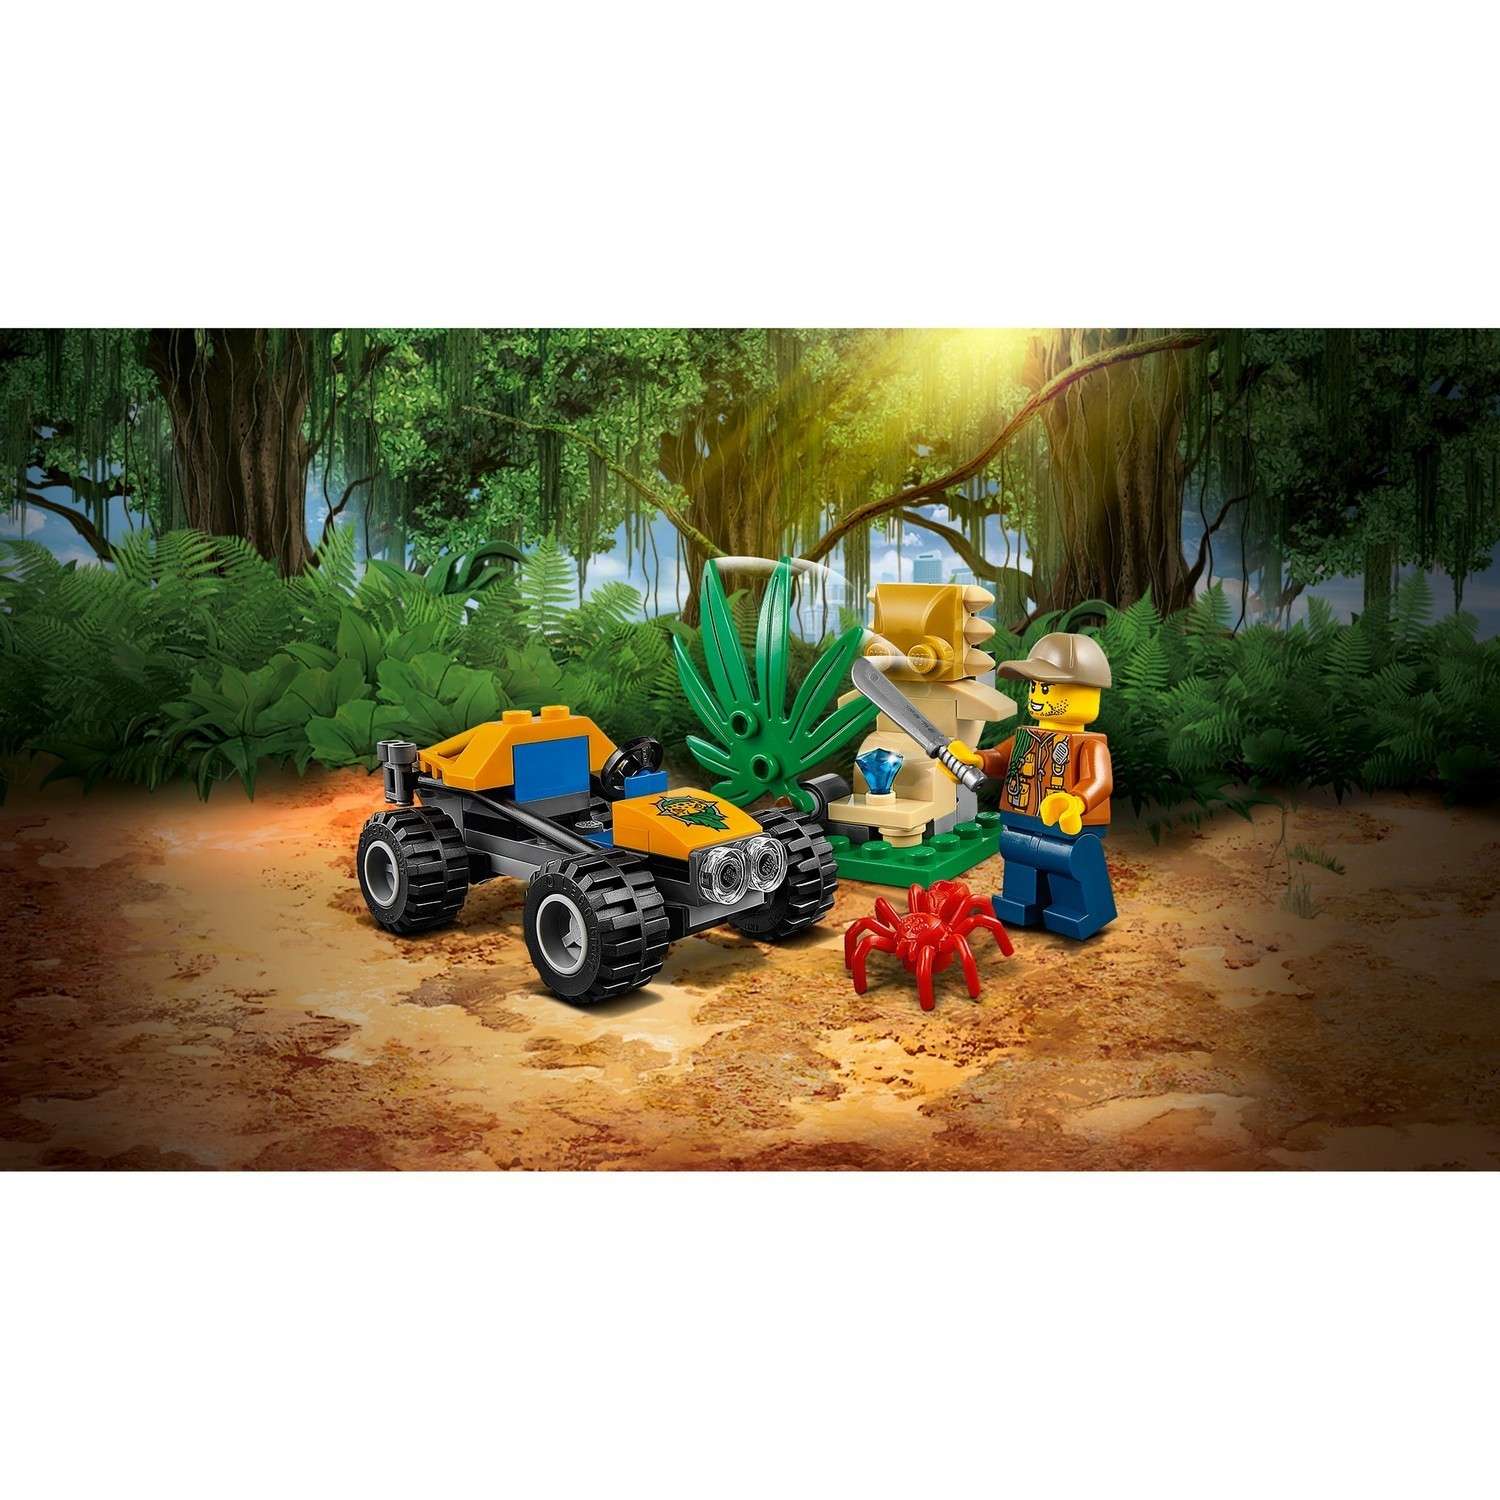 Конструктор LEGO City Jungle Explorers Багги для поездок по джунглям (60156) - фото 4